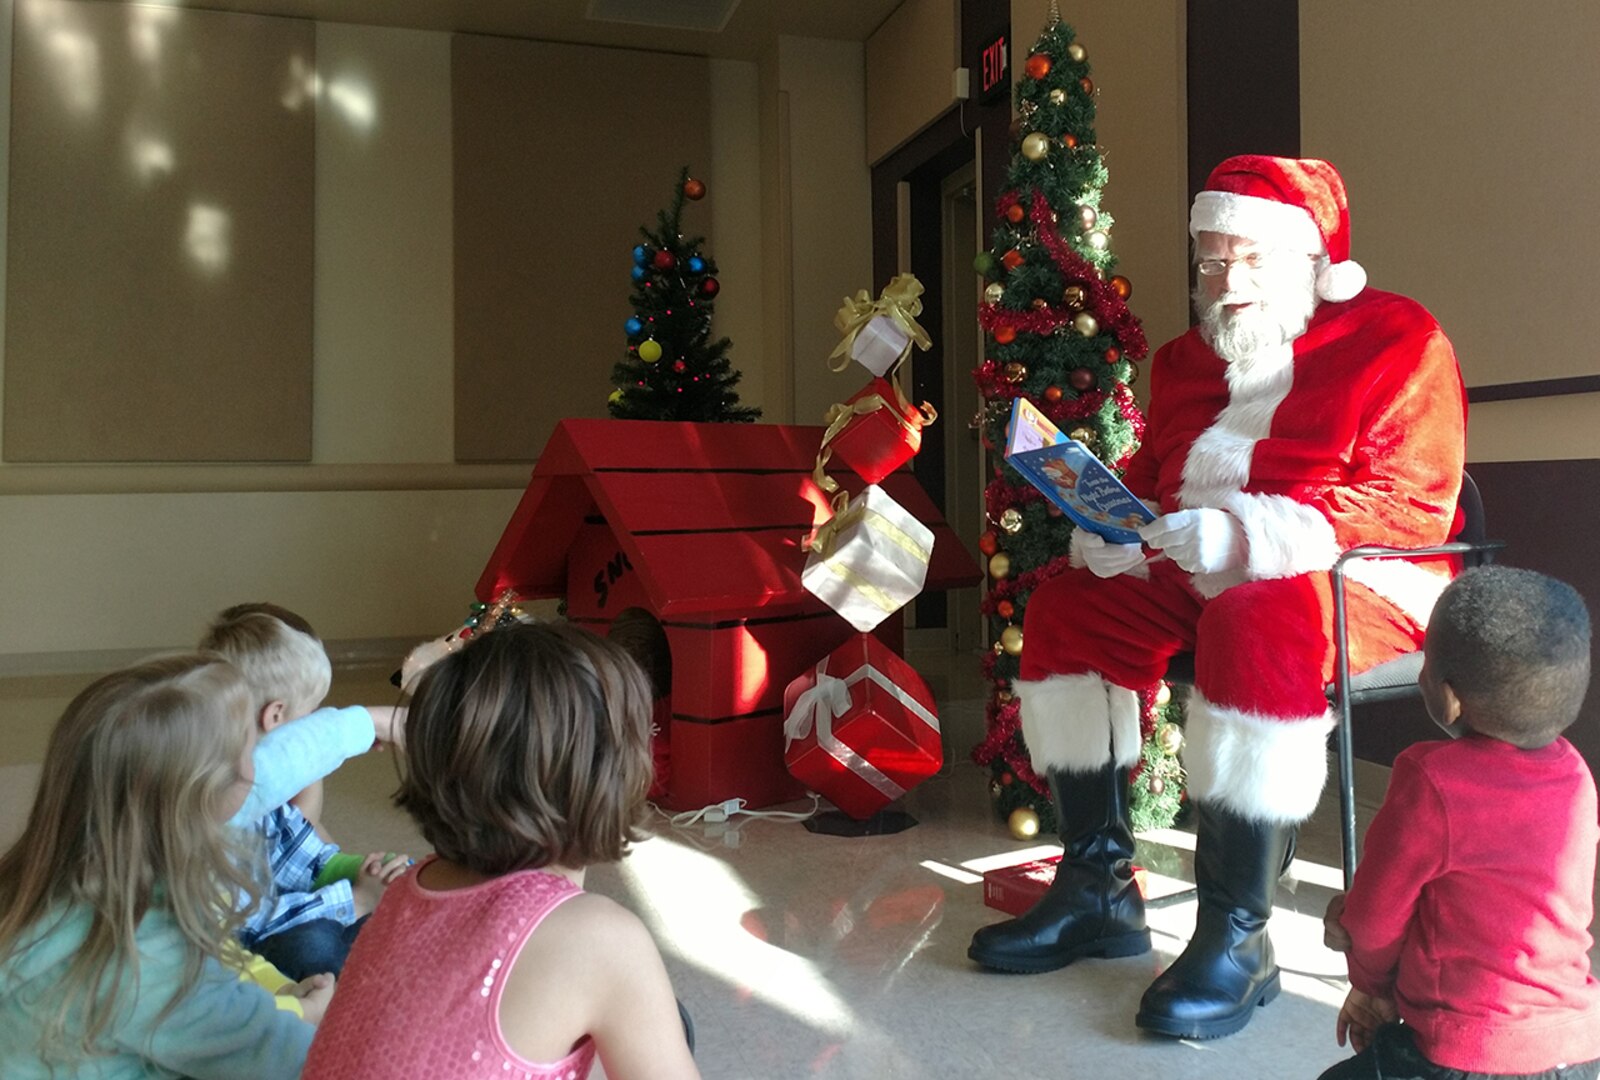 Santa reads to kids